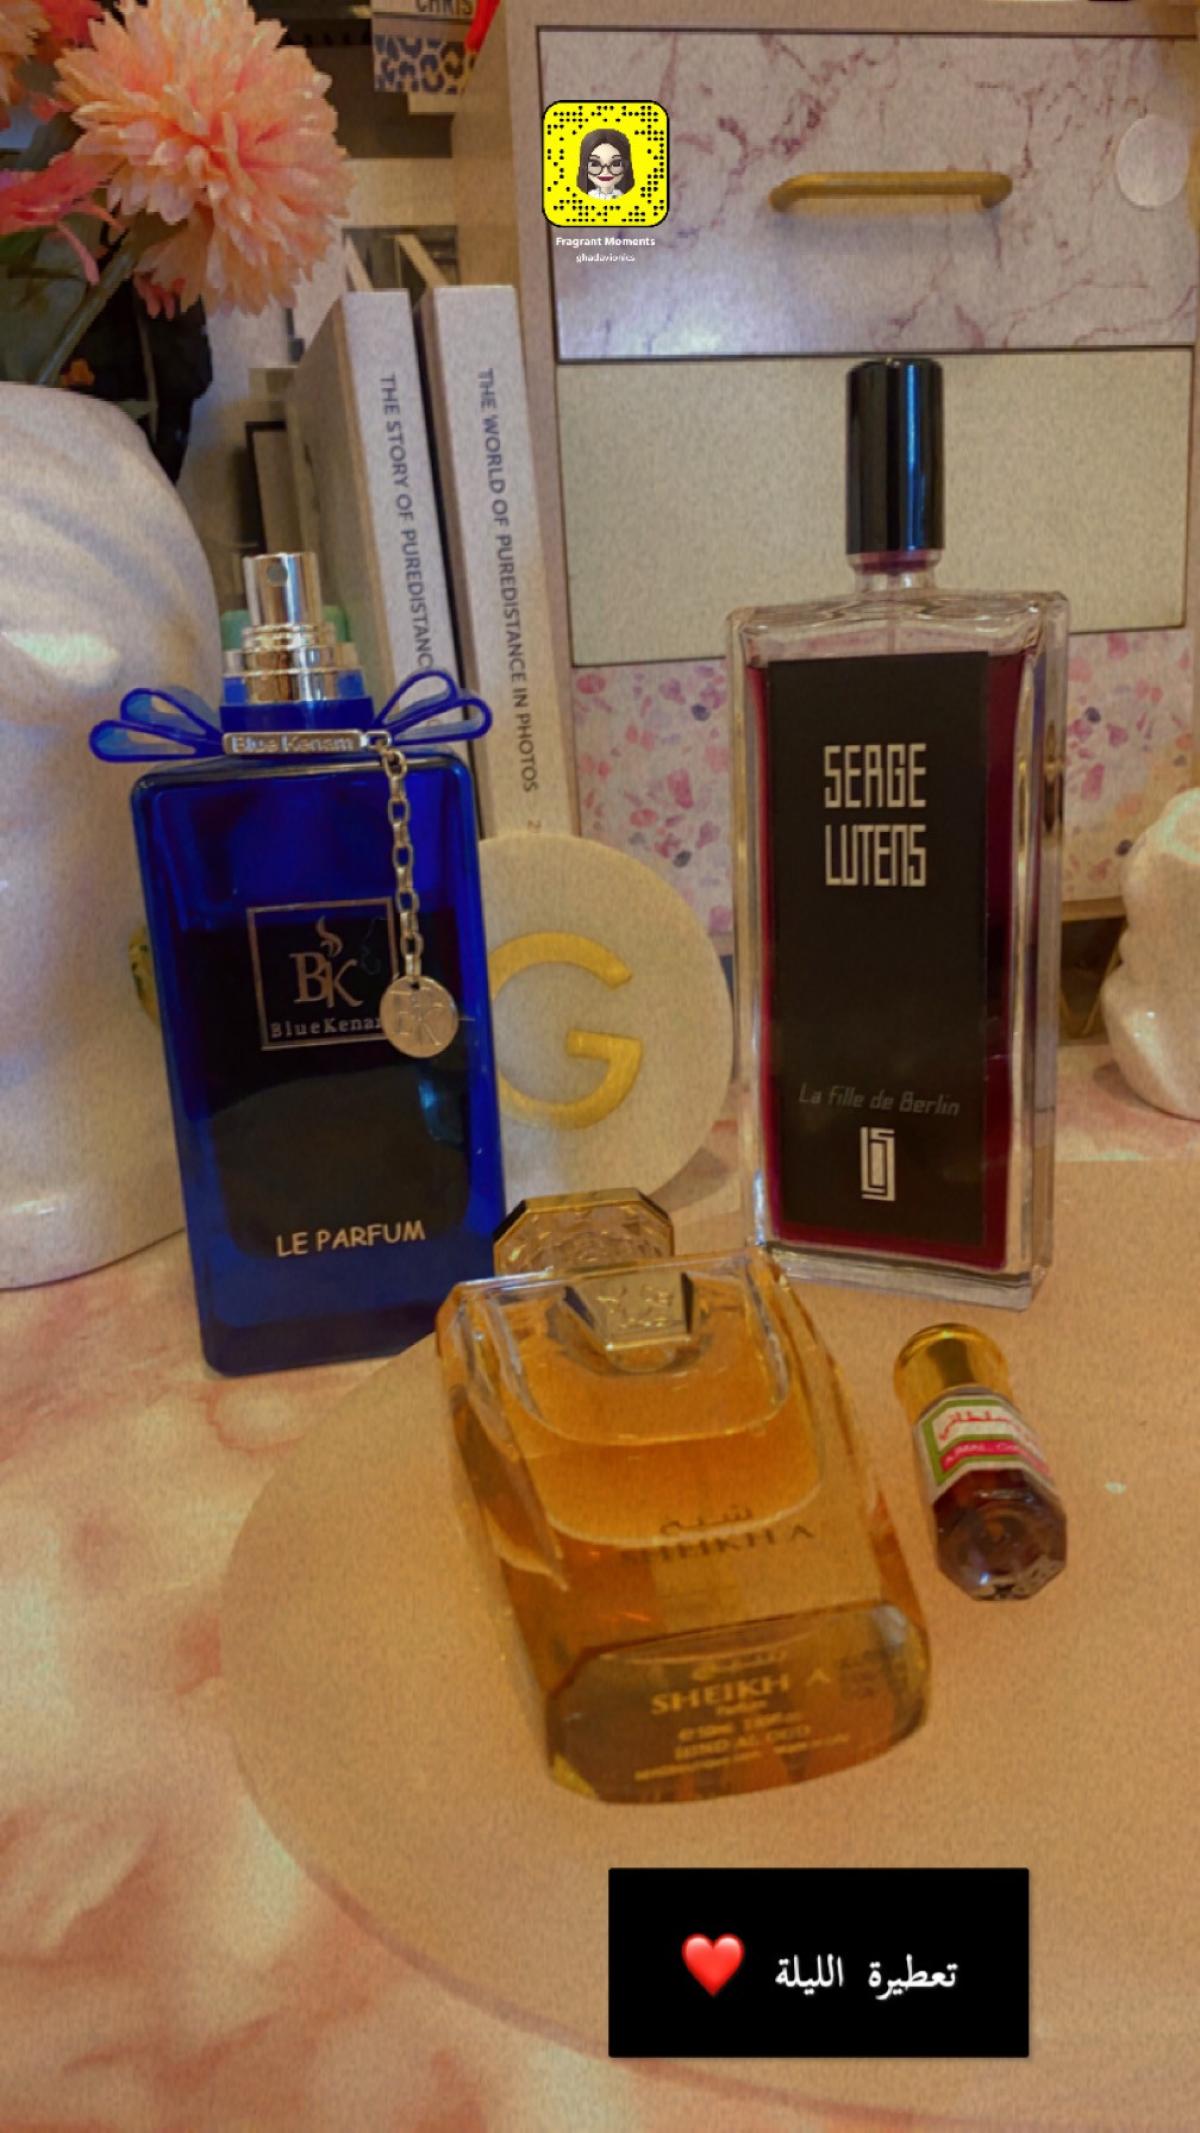 La Fille de Berlin Serge Lutens perfume - a fragrance for women and men ...